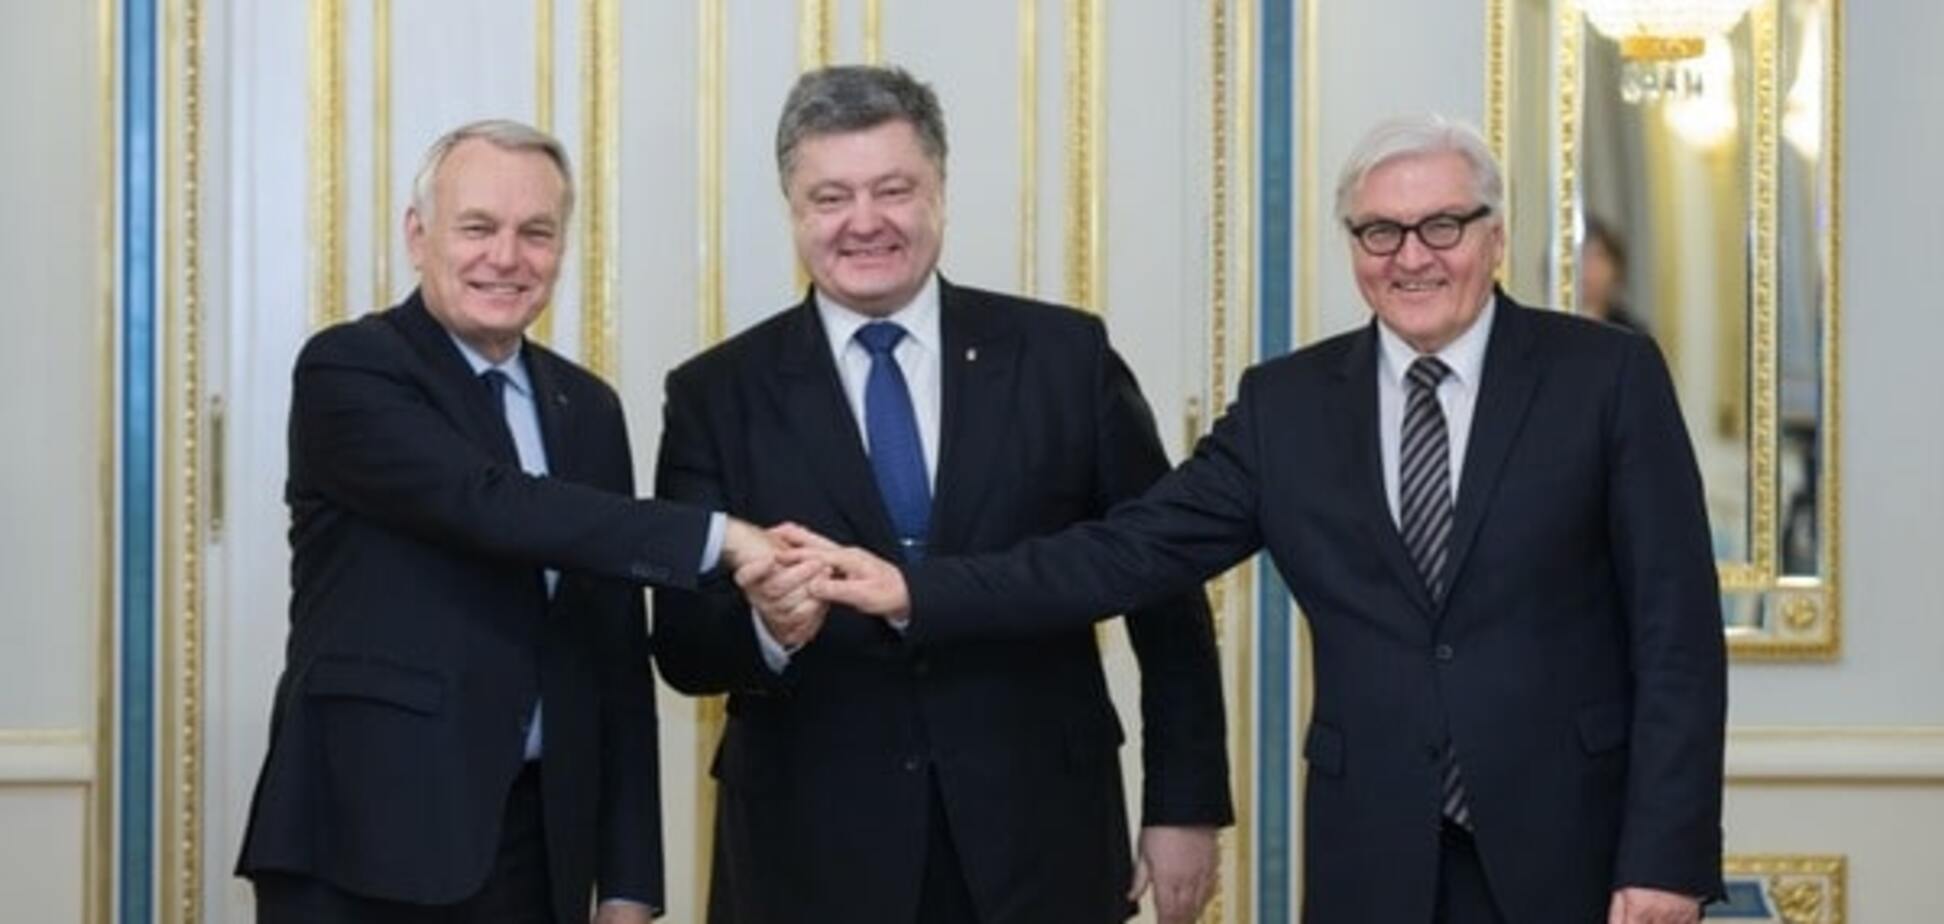 Порошенко обсудил Донбасс и санкции против России со Штайнмайером и Эро